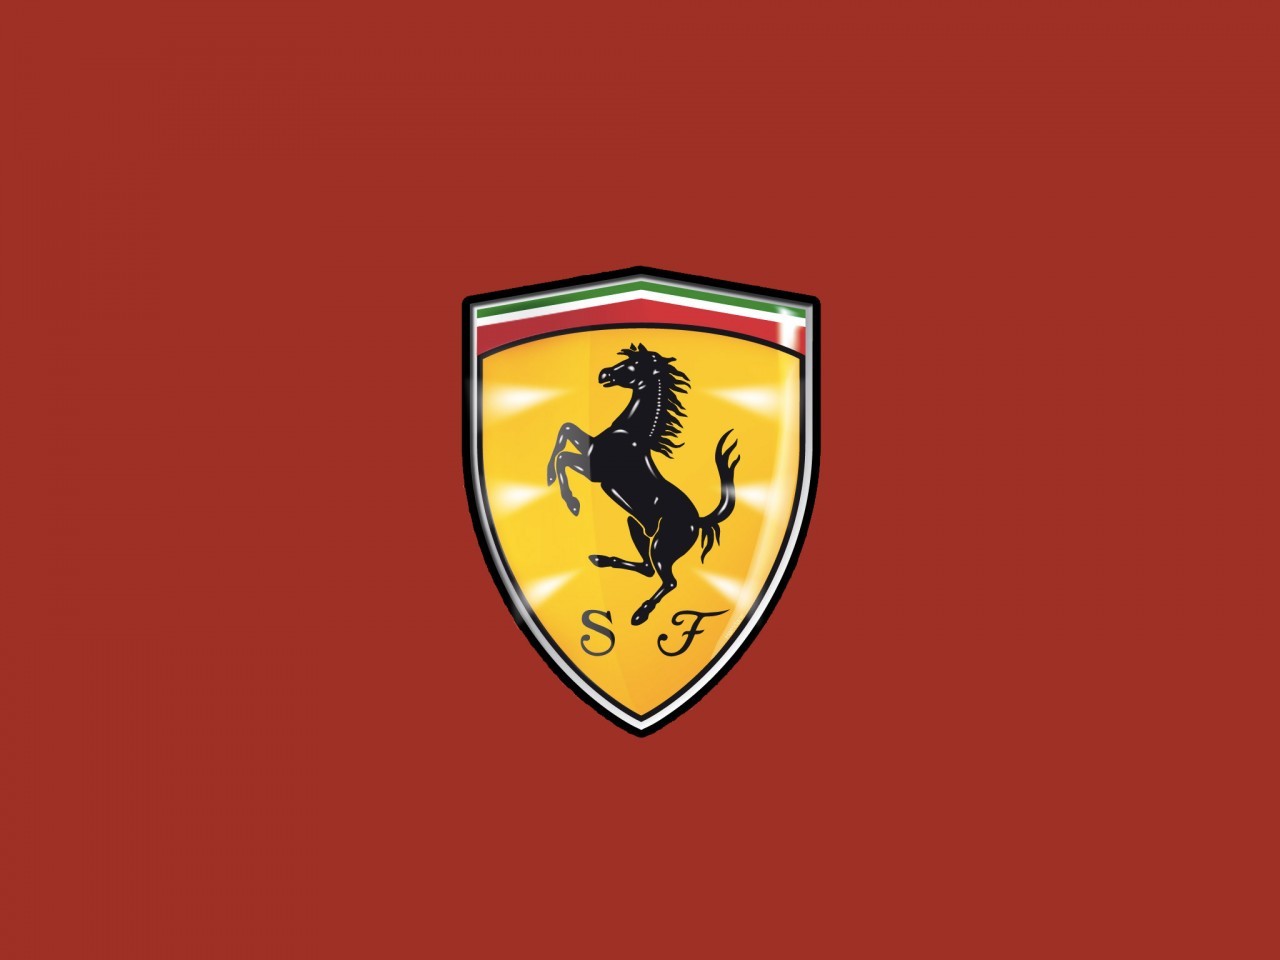 法拉利车标logo矢量素材 - 车标 - 易图网